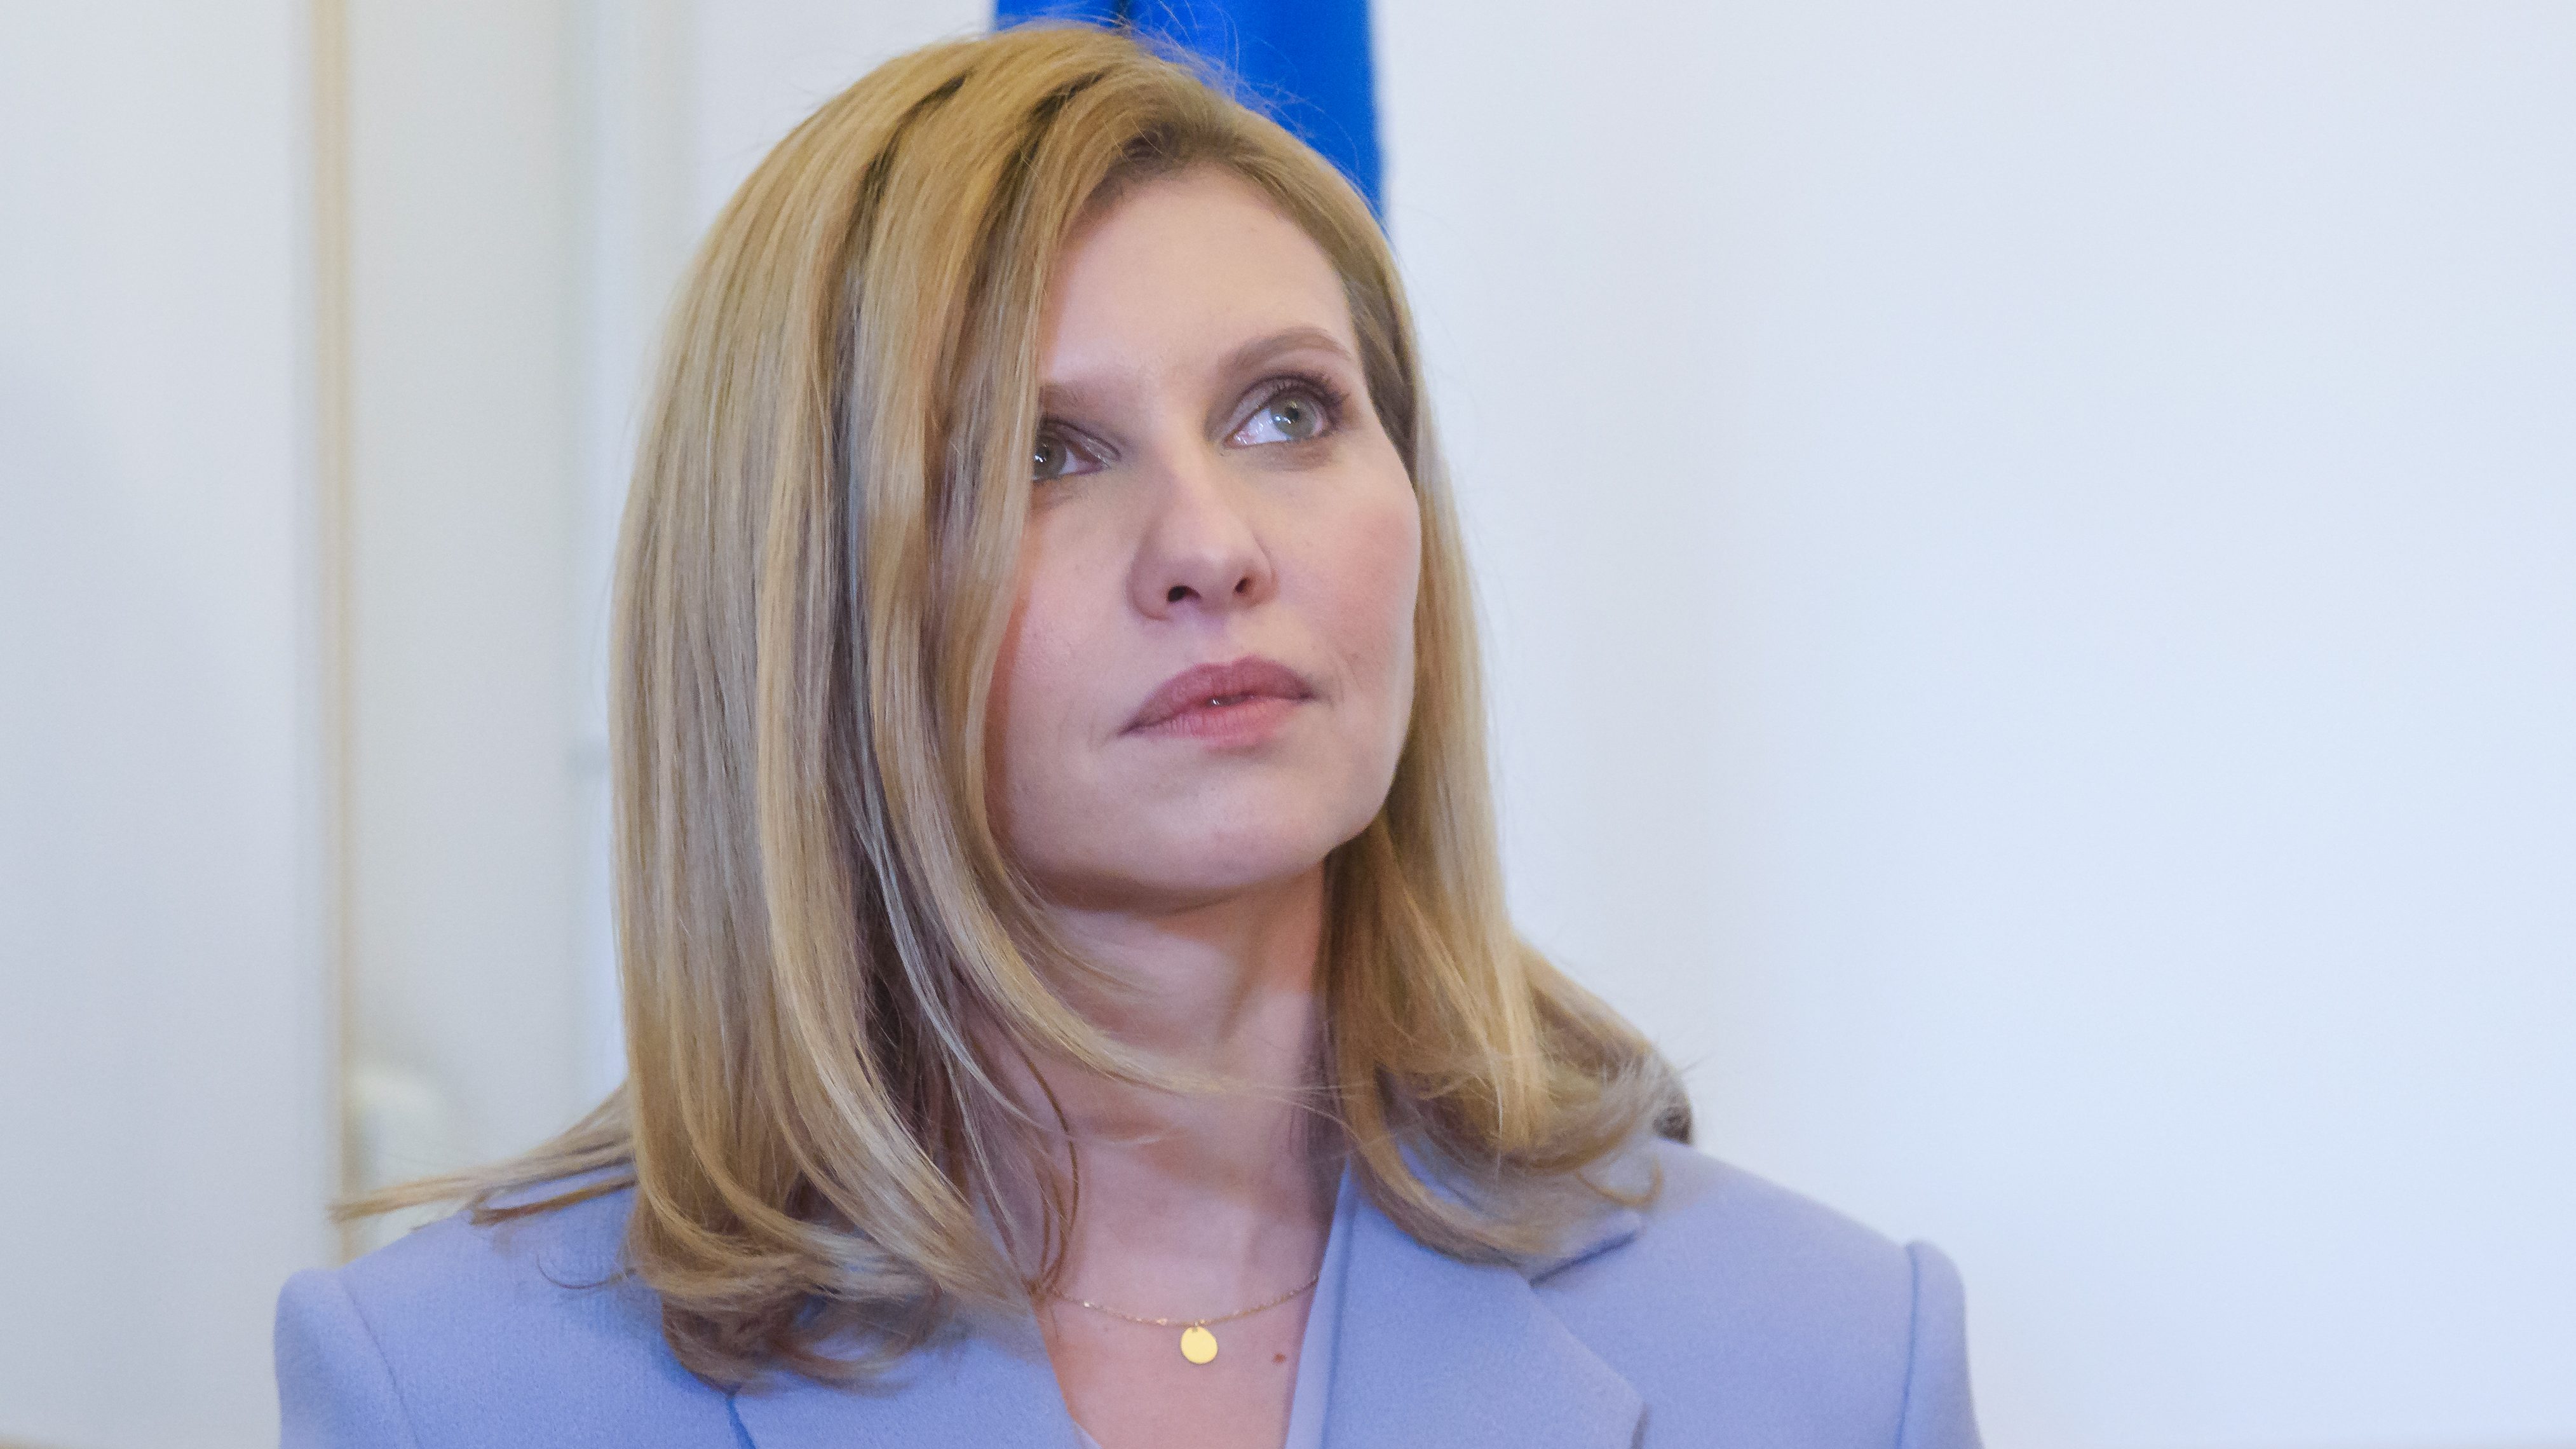 Elfelejtett szólni neki a férje, hogy elnök akar lenni – portré az ukrán first ladyről